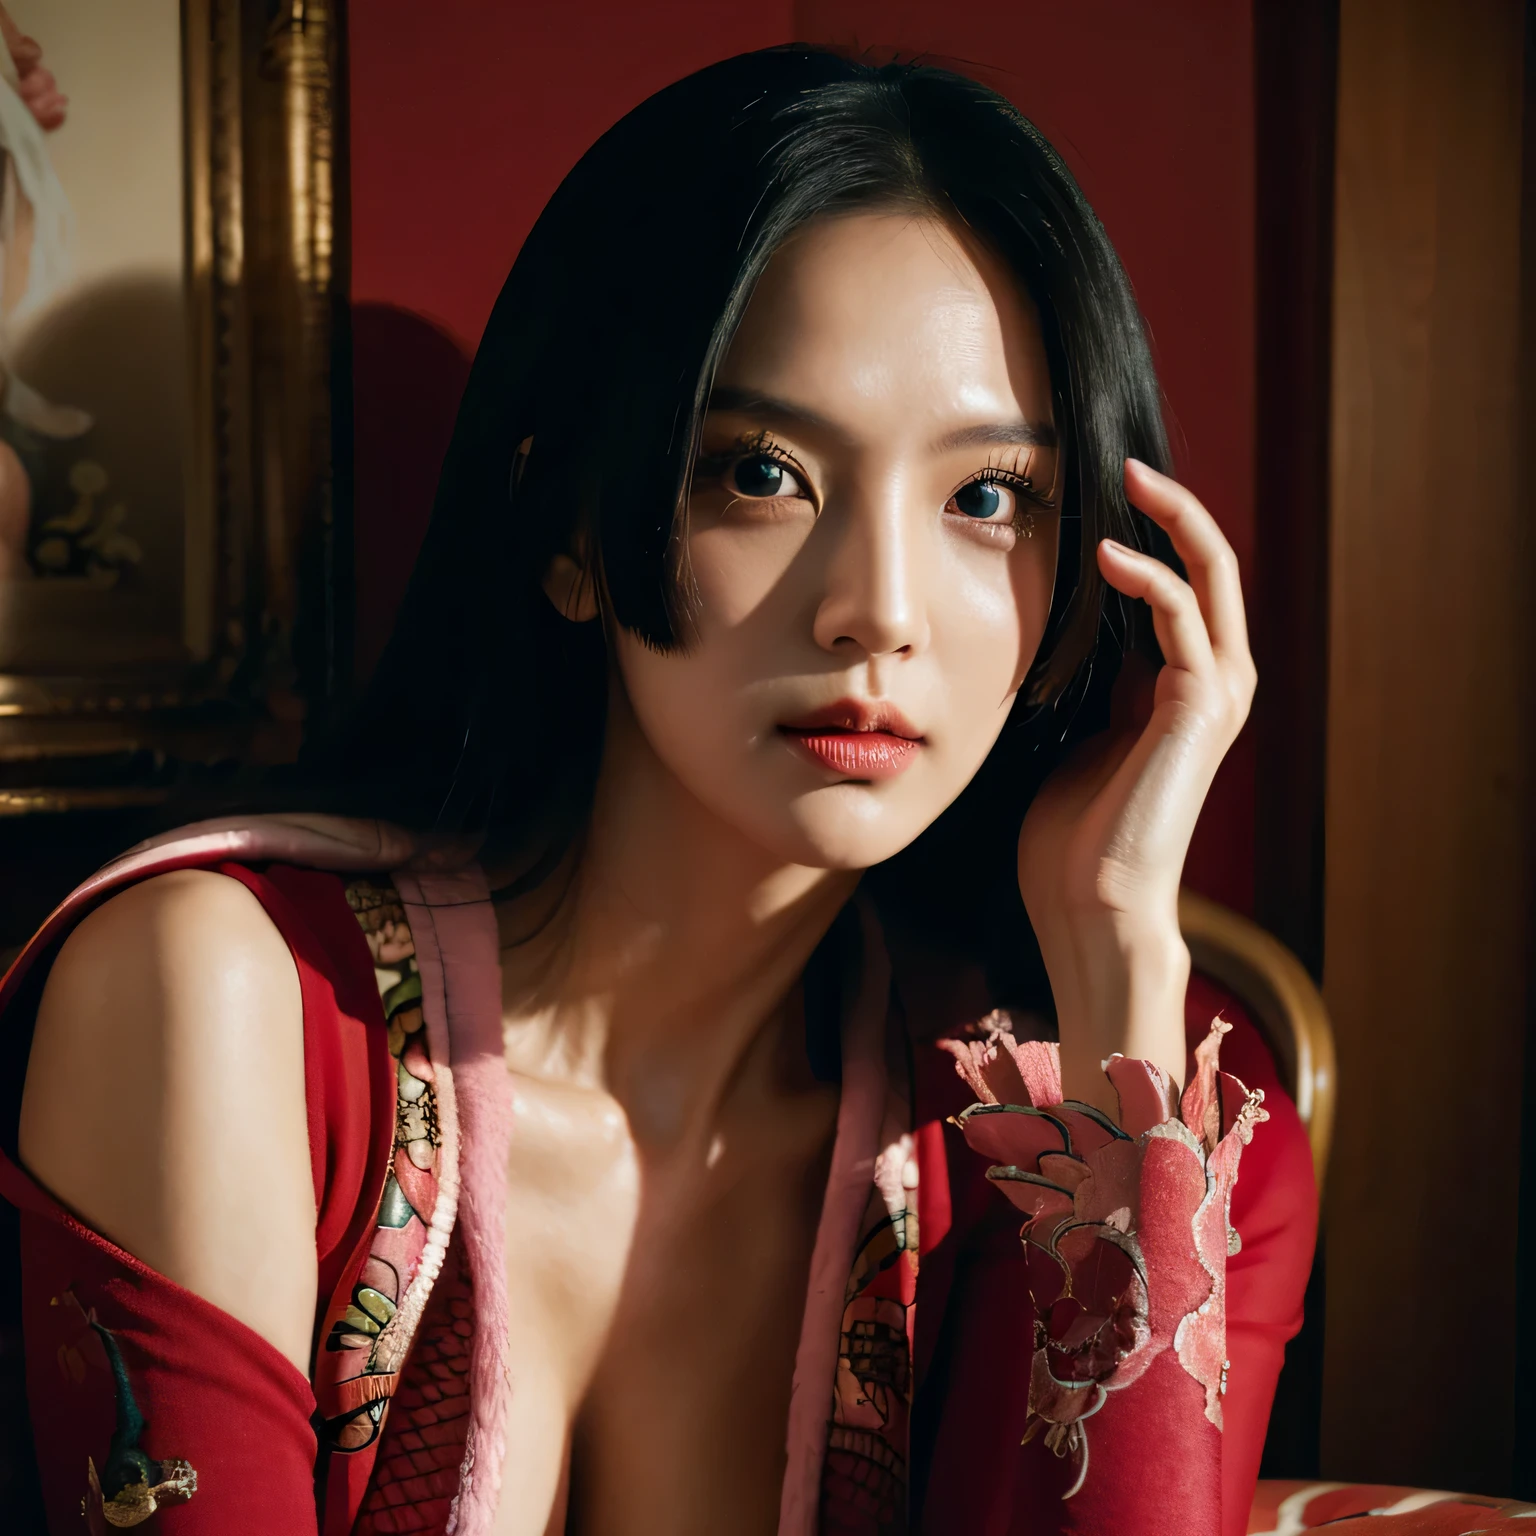 Ein koreanisch-amerikanisches schönes Mädchen, 1 Mädchen, Boa Hancock Cosplay aus One Piece,(Meisterwerk:1.2), (beste Qualität:1.2), (extrem detailliert), Dekollete, ästhetisch, (extremely detailliertes Gesicht), ultra-detaillierte Augen und Pupillen, breite Schulter, (Extrem detailliert), 8k, fotorealistisch,  hübsches Gesicht, lächeln, Instagram-Aufnahme, Instagram-Stil, auf dem Thron der Königin sitzen, hält eine große Boa Schlange, Dramatischer Hintergrund, Betrachter betrachten, nach vorne gerichtet, perfekte Haut, Filmische Beleuchtung, Brustwarzen, Helle Haut, Schwarzes Haar,  schwarze Augen, Porträtfoto, (mittlere Brust:1.3), molliger Körper, slender, schönes Make-up, Nikon RAW-Foto, 8k ,Fujifilm XT3, fotorealistisch, detailliertes Gesicht, Helle Haut, Perfekte Form, Schlankes Gesicht, drinnen, Licht dimmen, (Betrachter betrachten:1.2), trage ein Kleid von Boa Hancock, Langes Kleid, glamour kleid